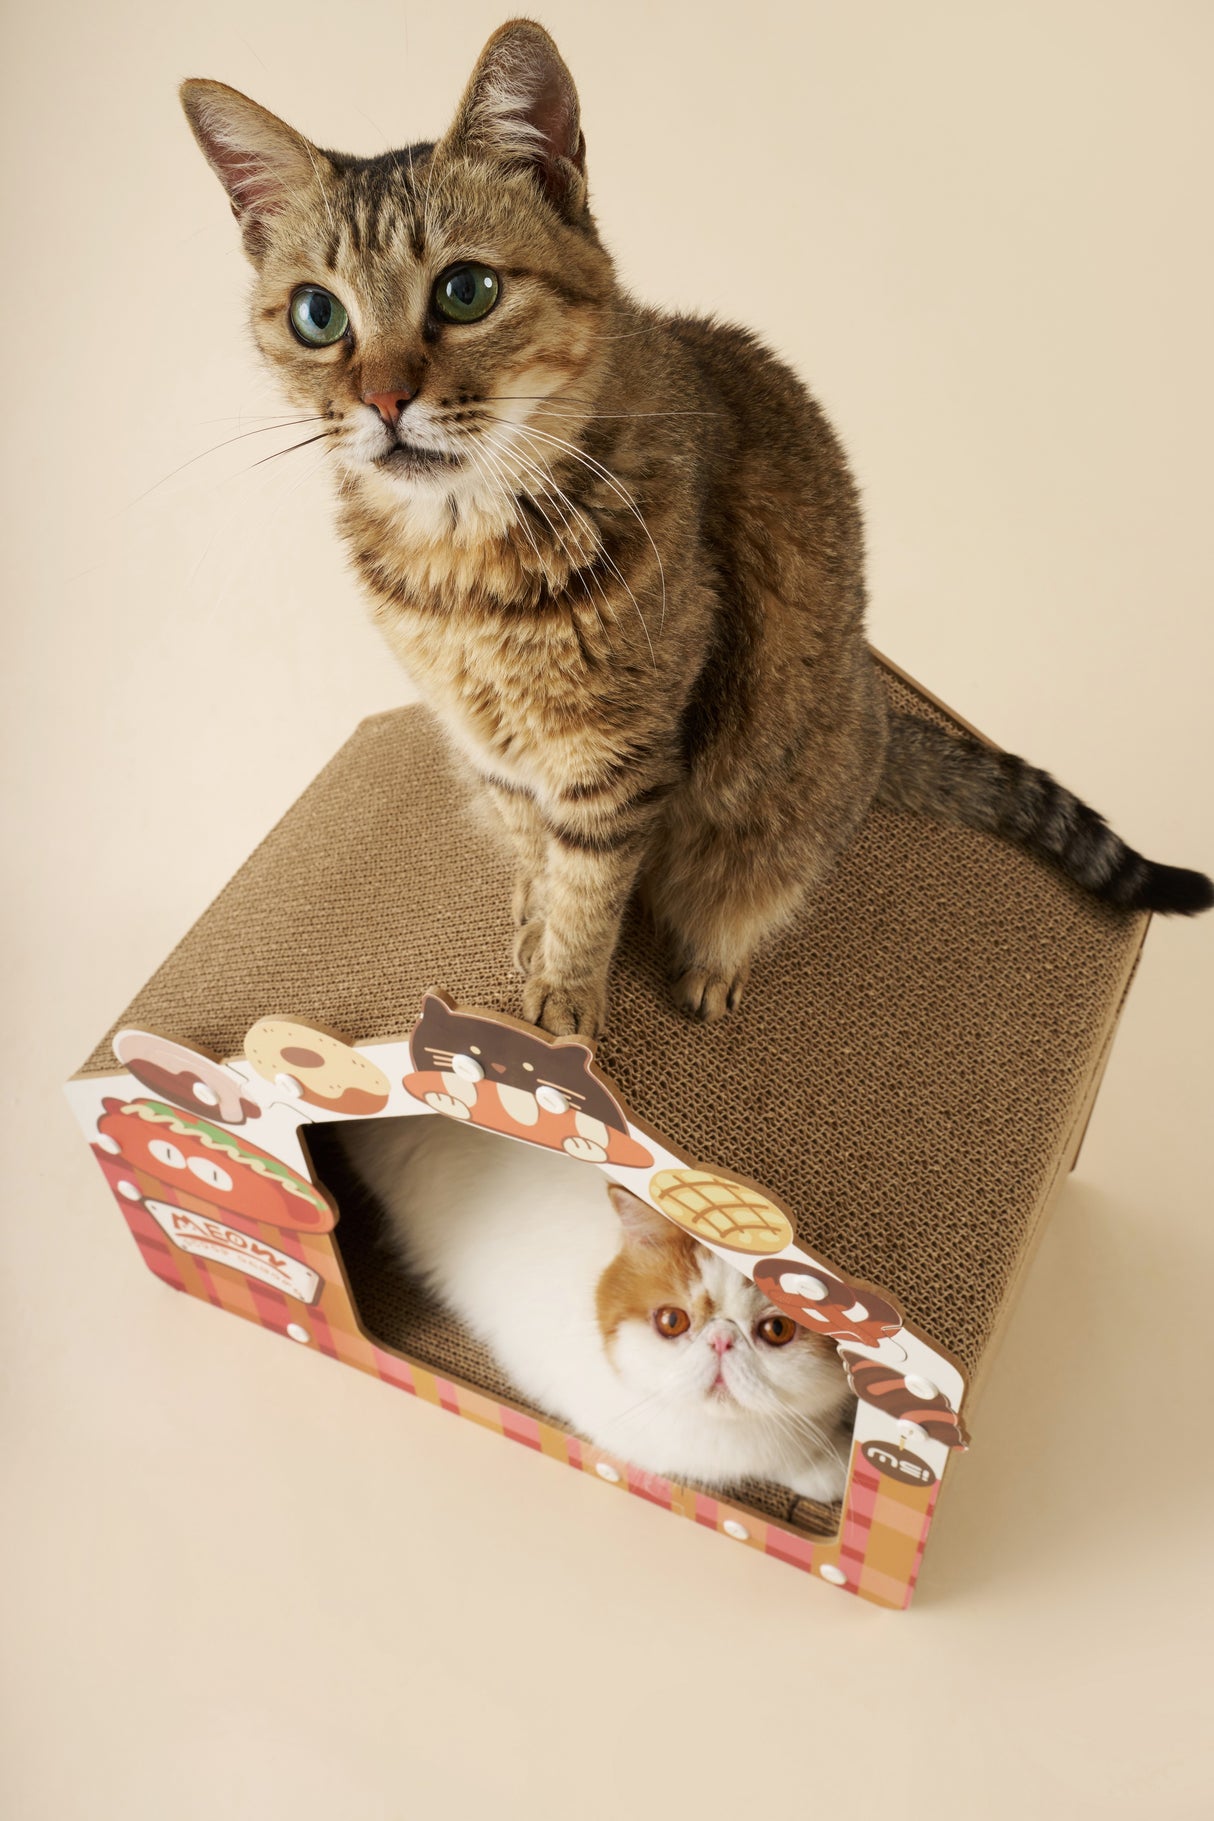 Kattenhuis - Krabmeubel - Karton - Geschikt voor katten < 7 kg - Rood, Geel en Wit SpirePets